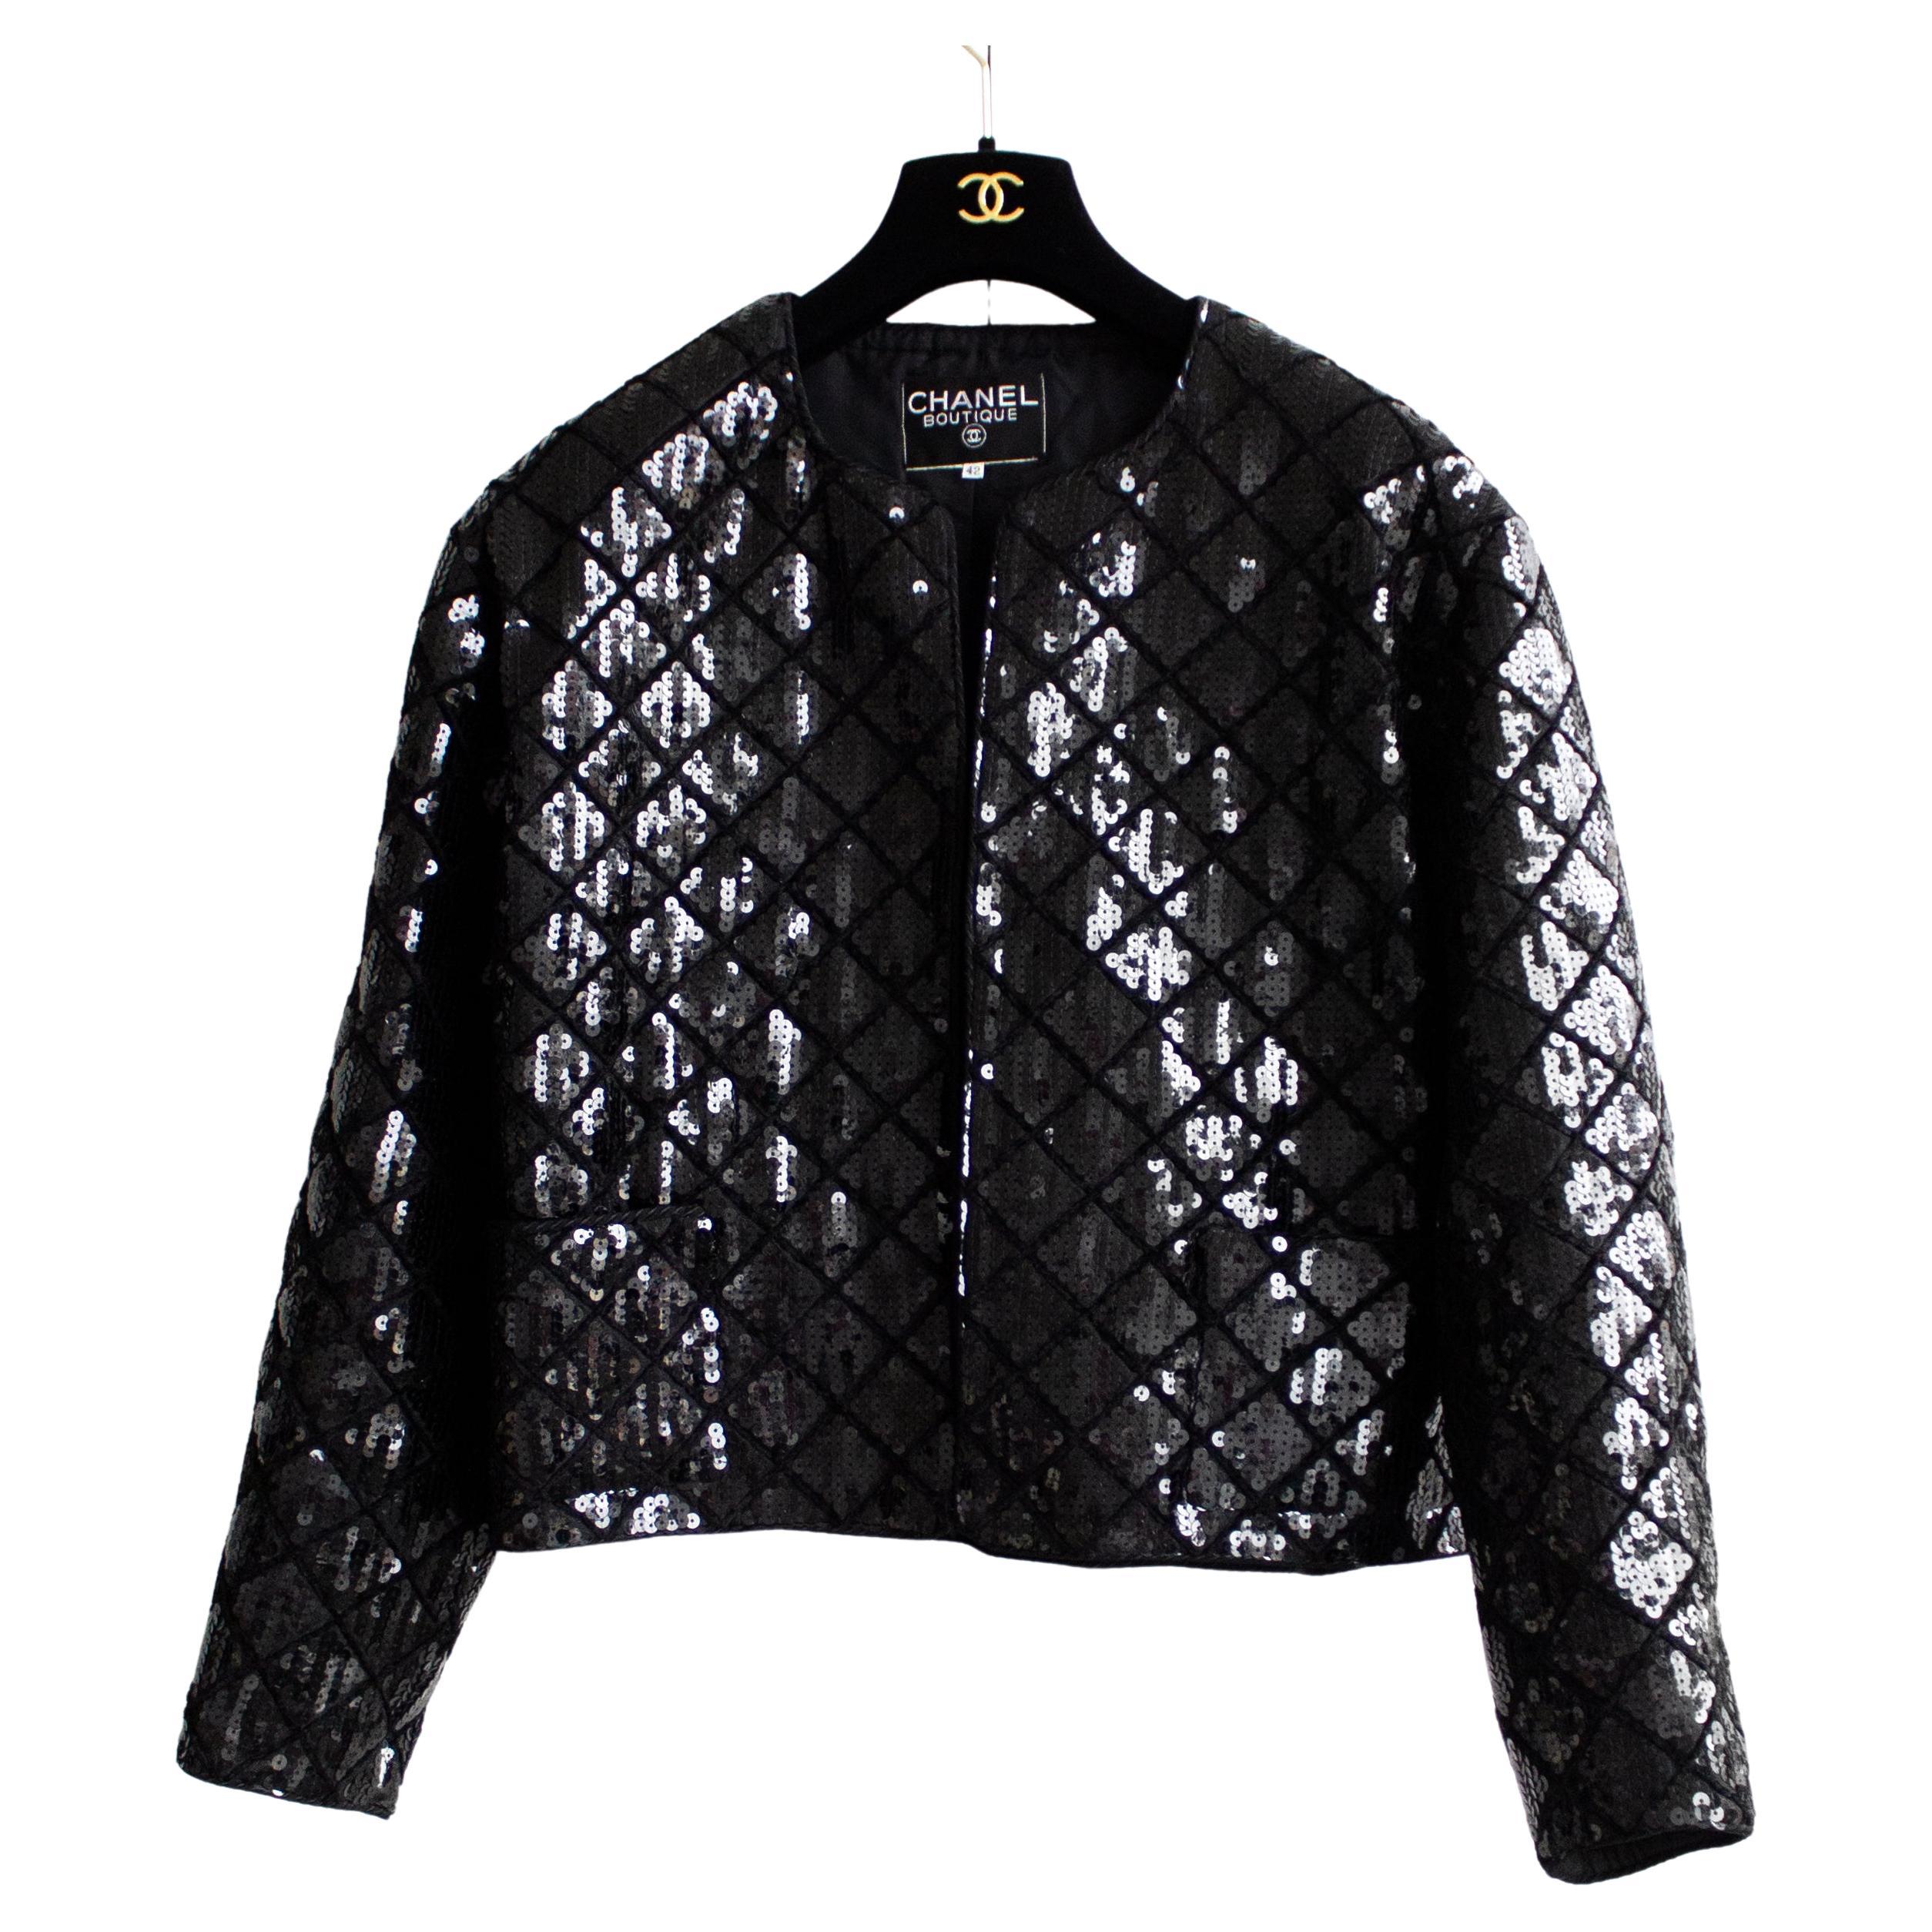 Rare Chanel Vintage S/S 1987 Black Quilted Sequin Embellished Jacket